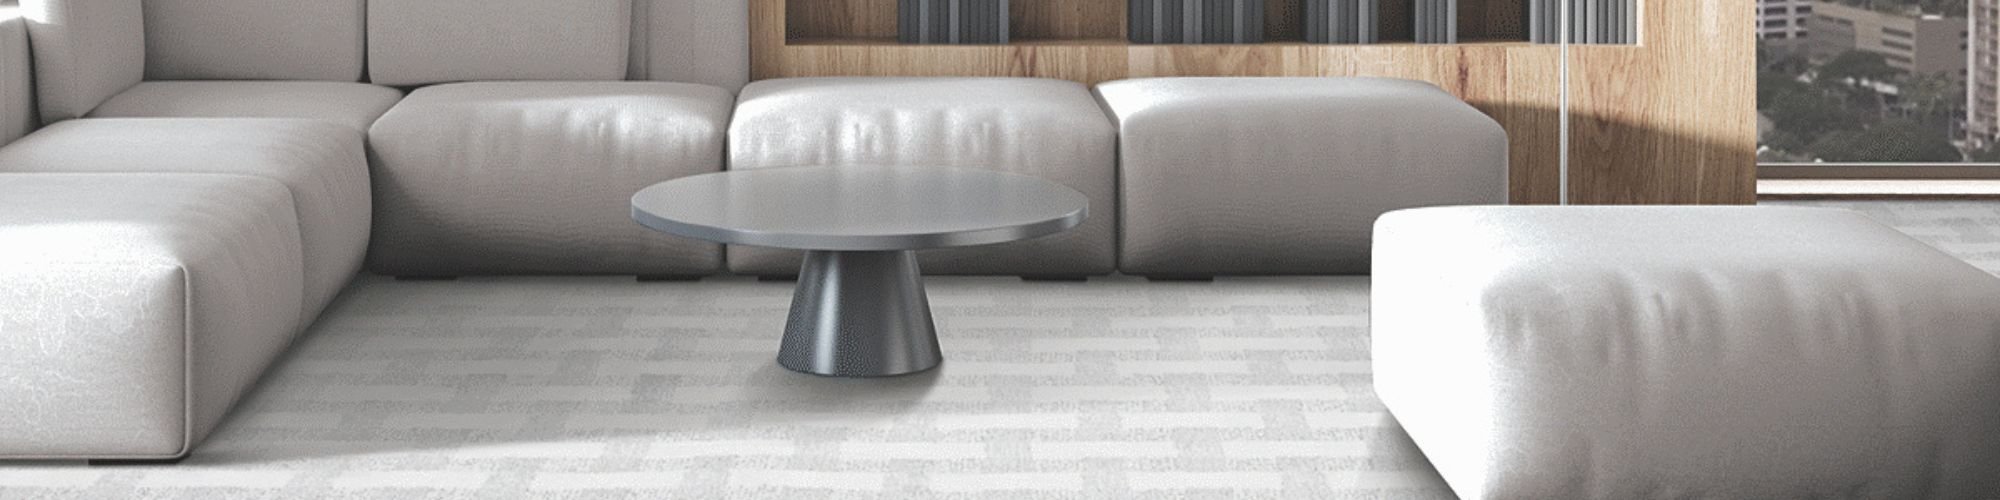 Modern carpeted living room